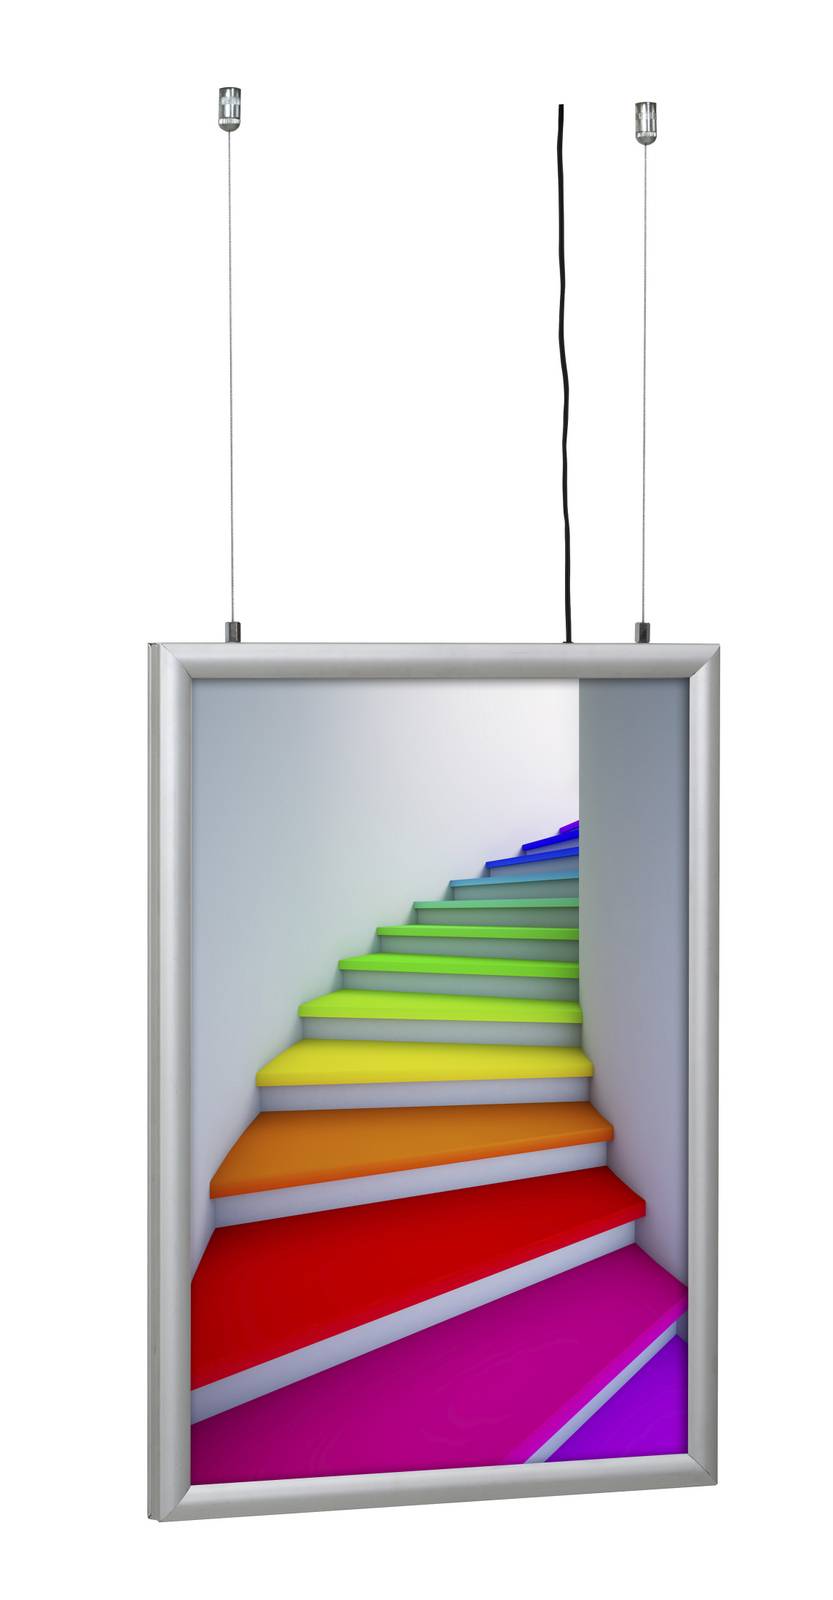 Cadre led lumineux suspendu avec éclairage pour affichage publicitaire